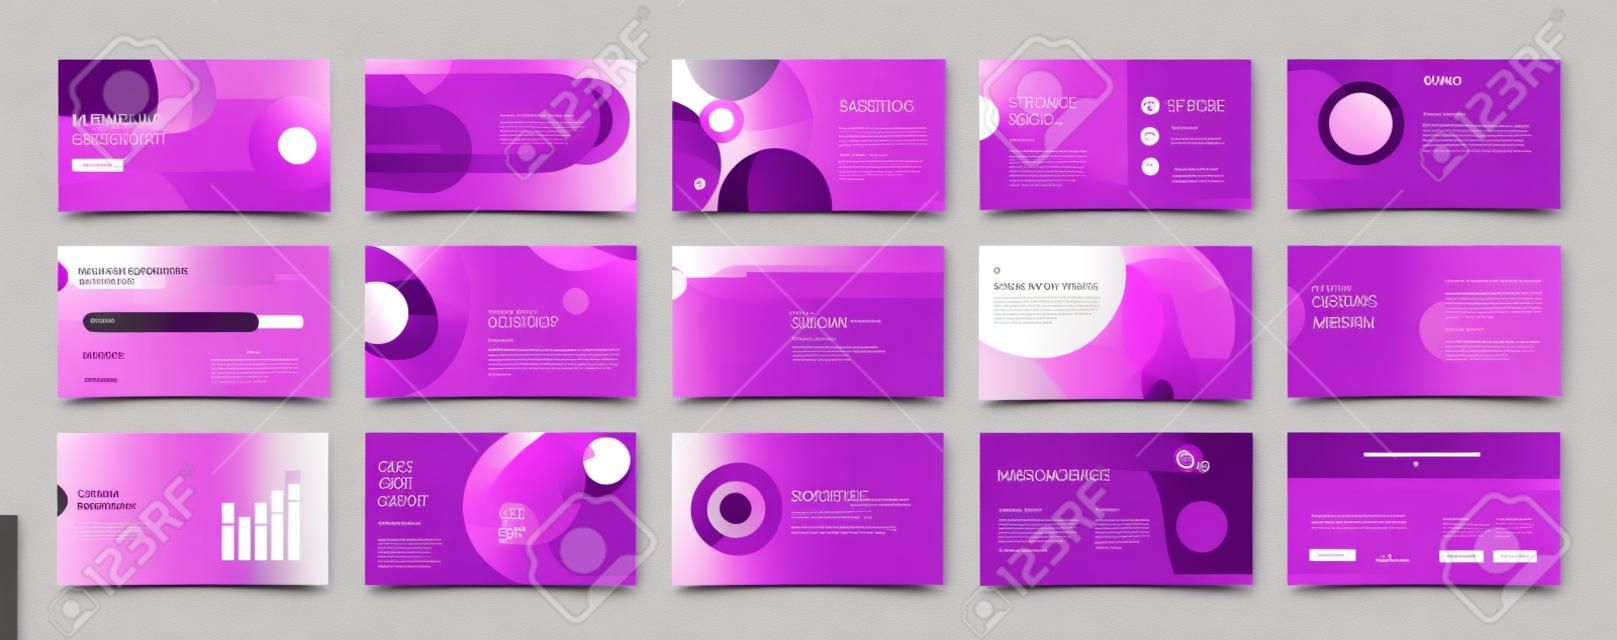 Geometryczne fioletowe szablony elementów prezentacji. infografiki wektorowe. do użytku w prezentacji, ulotce i ulotce, seo, marketingu, szablonie strony docelowej webinaru, projektowaniu stron internetowych, banerze.